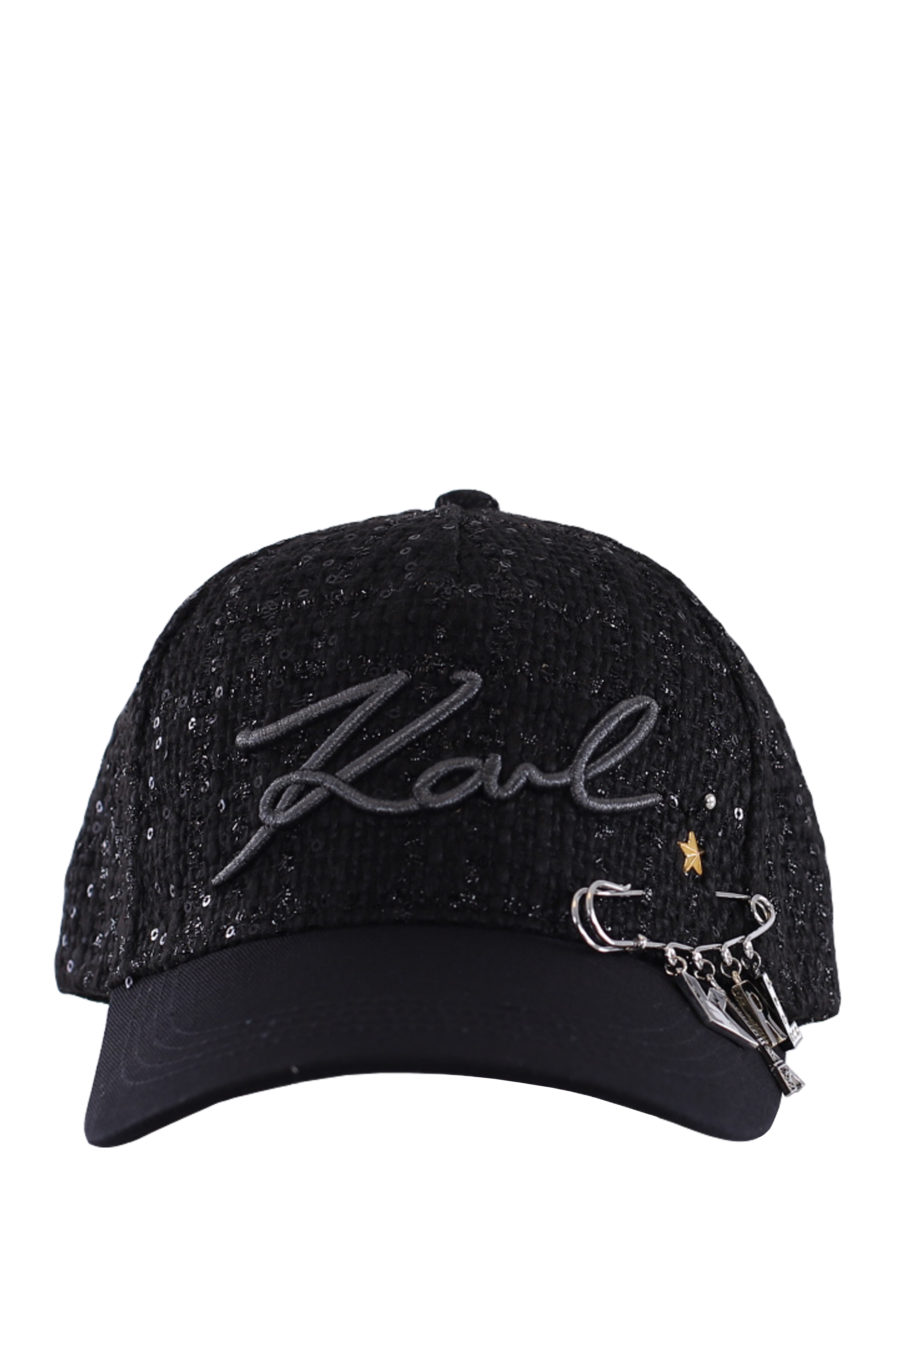 Gorra negra con pin de la marca - IMG 0205